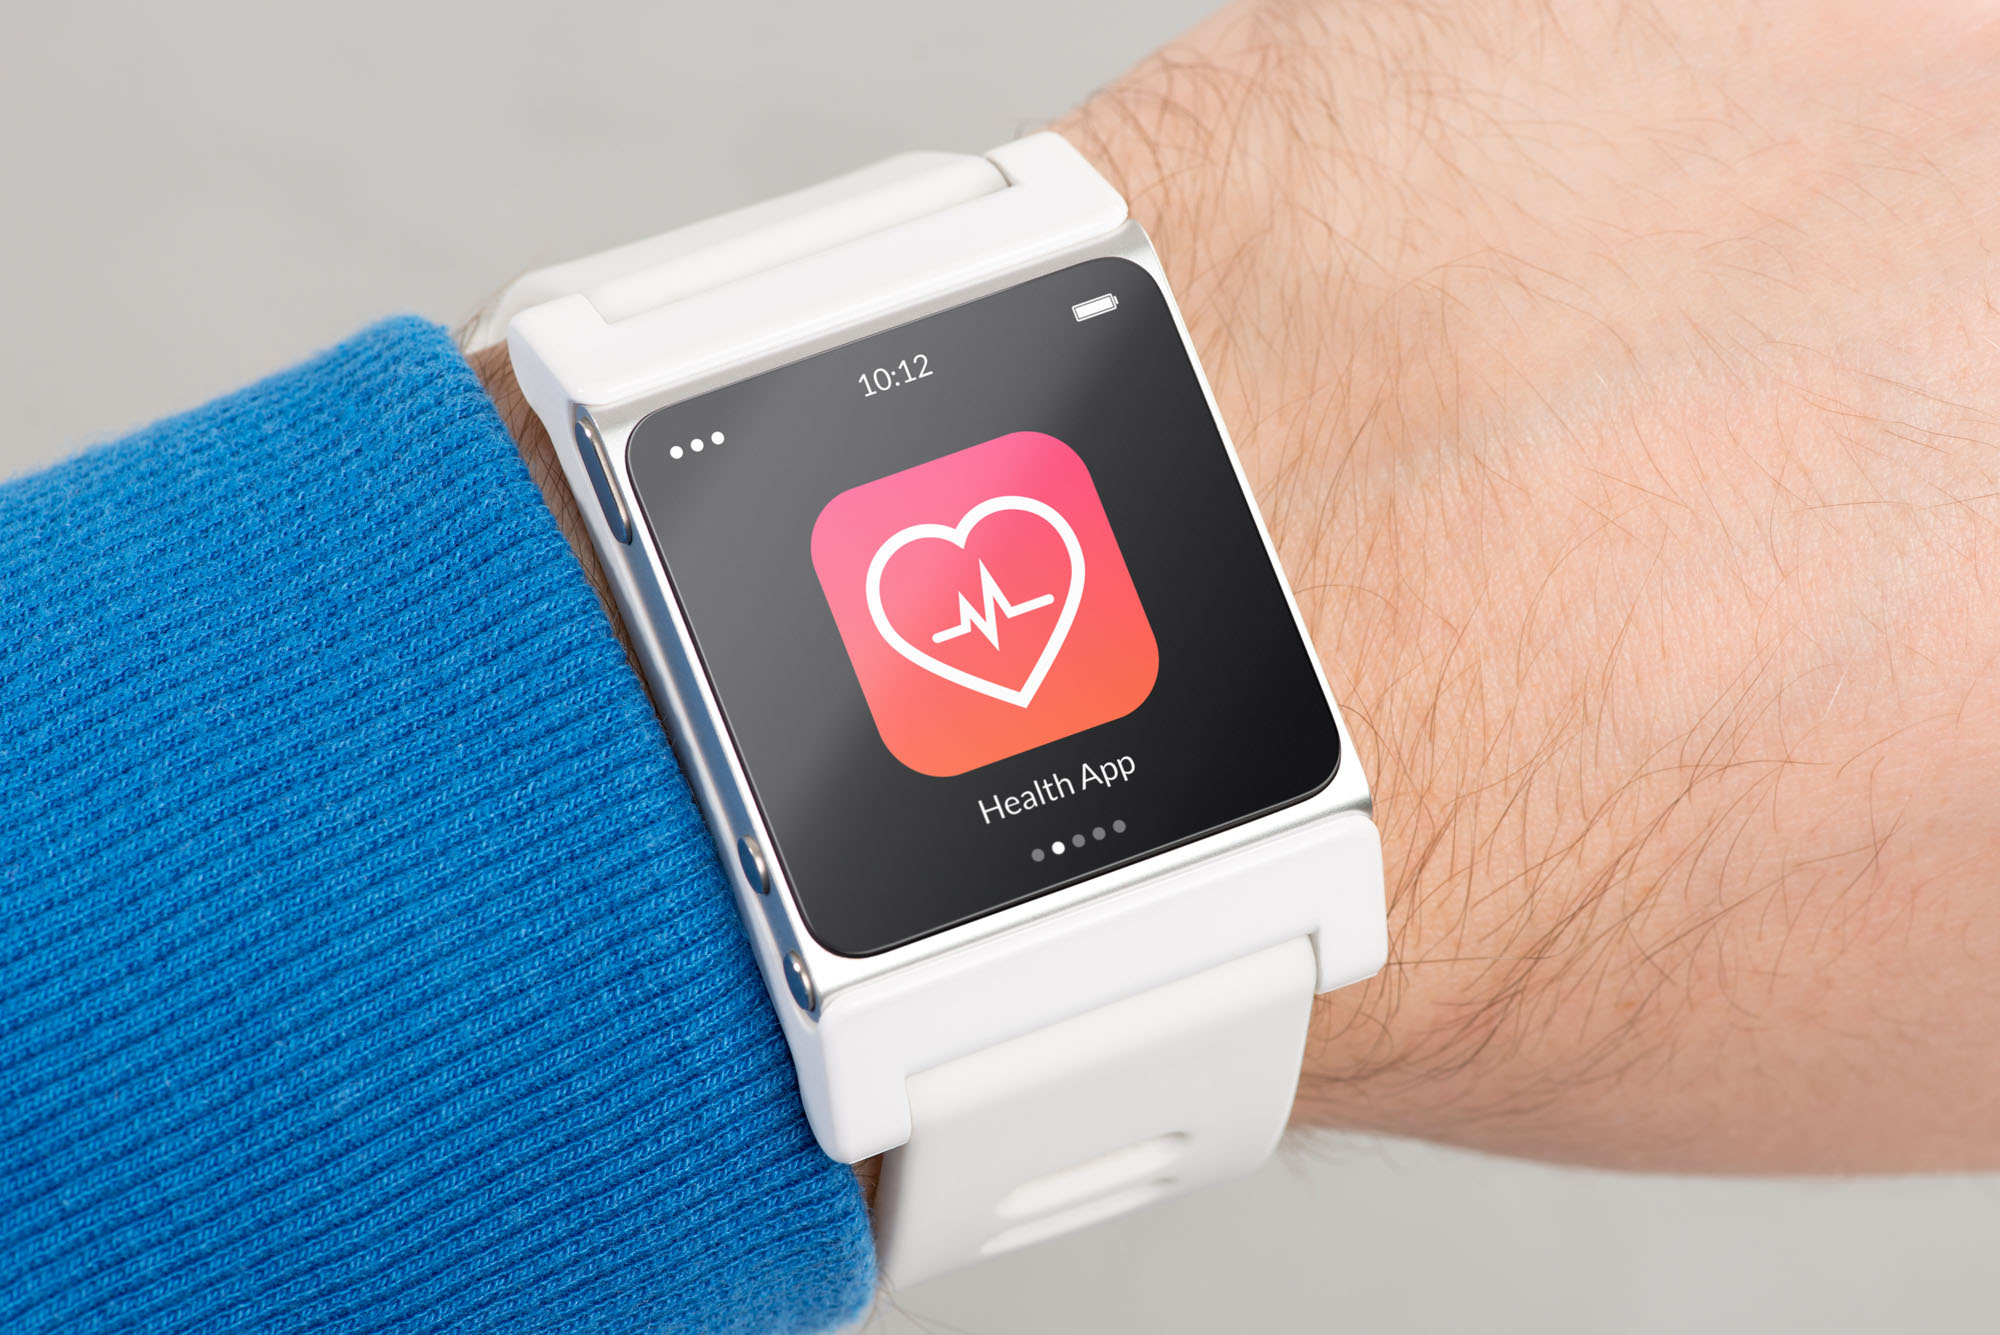 Gesundheitsapp auf einer Smart Watch